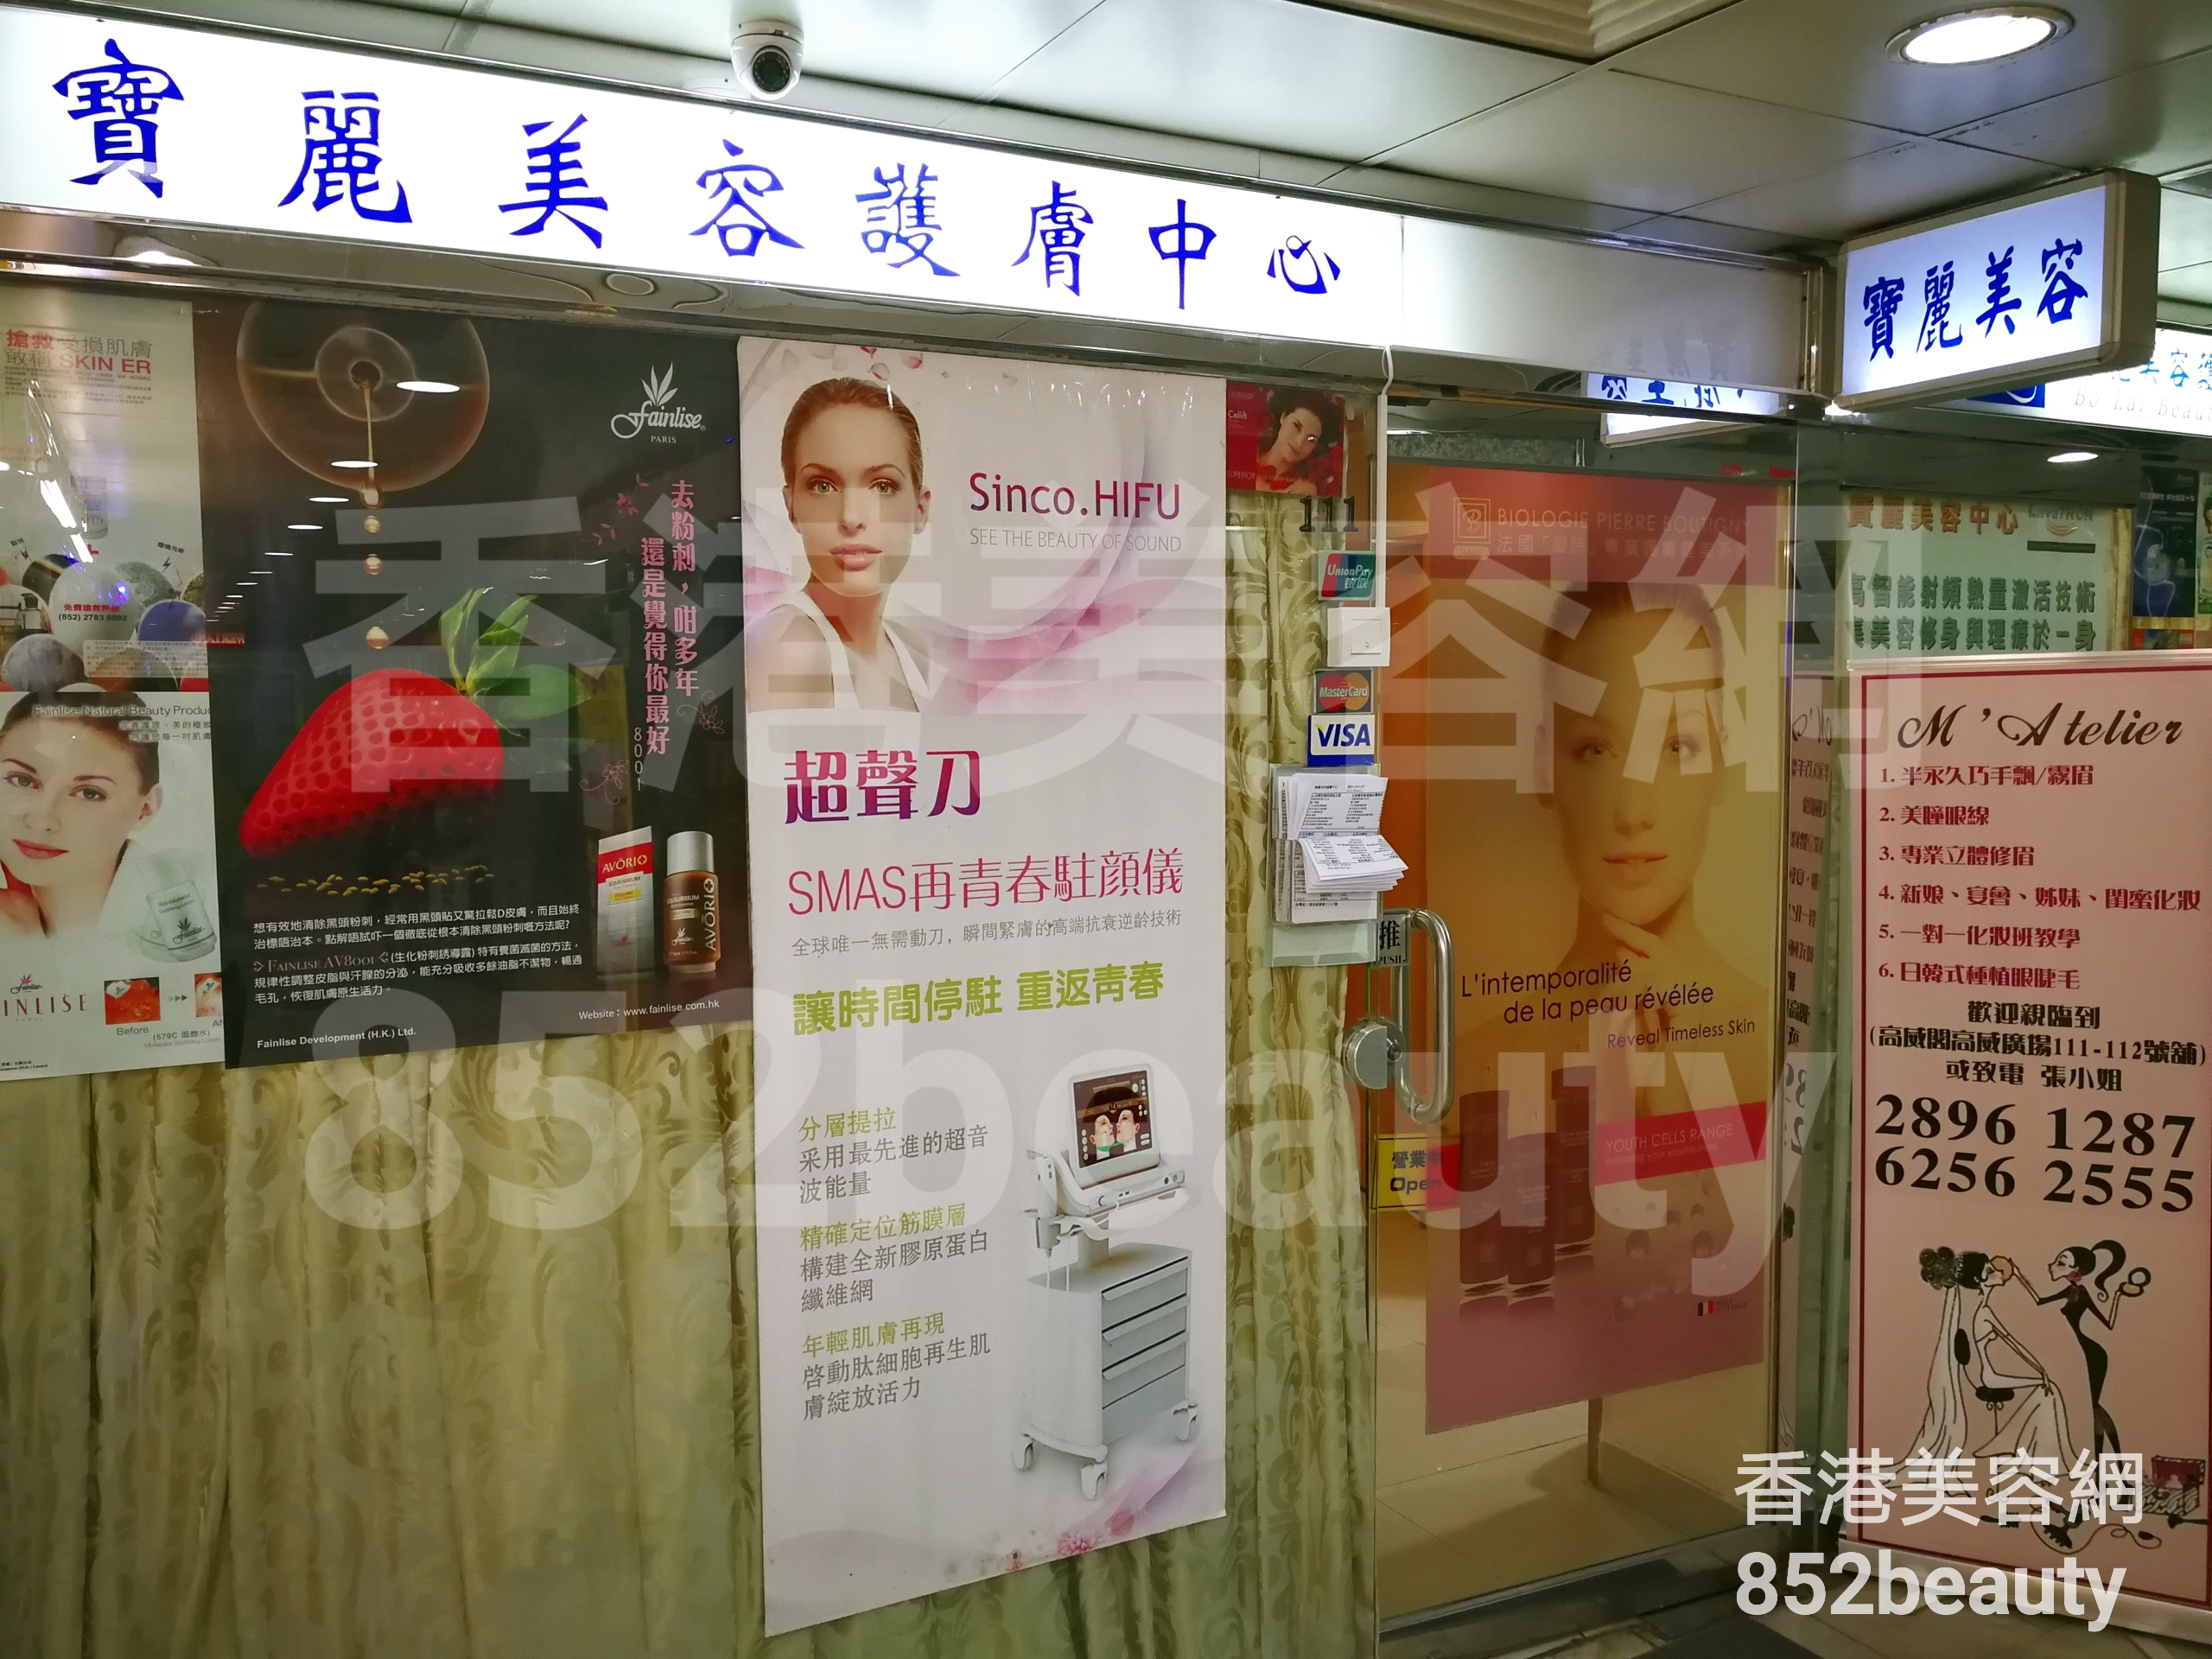 香港美容網 Hong Kong Beauty Salon 美容院 / 美容師: 寶麗美容護膚中心